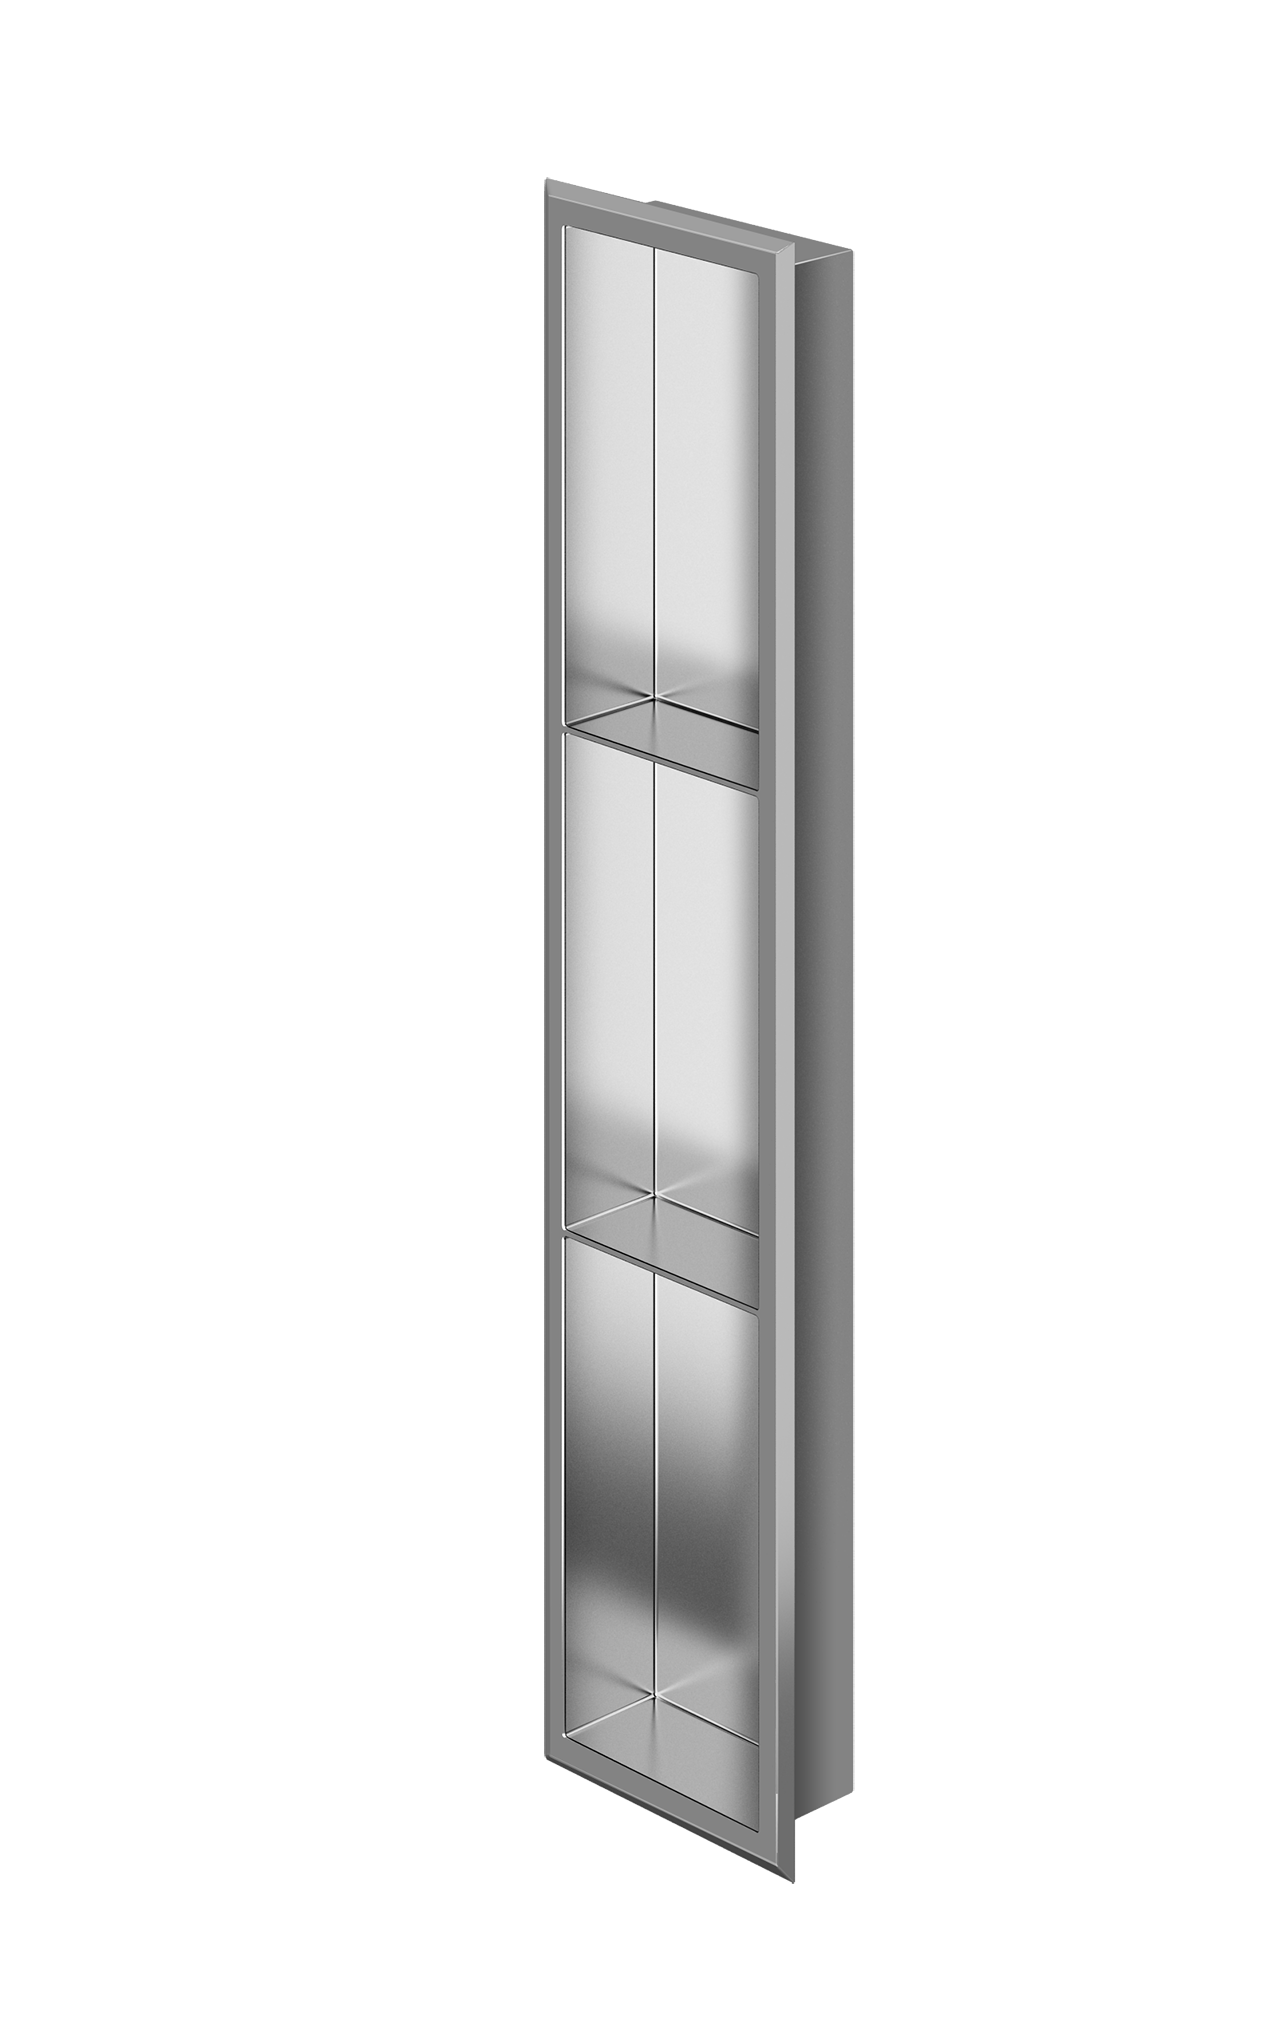 Zitta Stainless Steel Polished Niche 36" x 8" x 3" (914mm X 203mm X 76mm) With 2 Shelf - Renoz